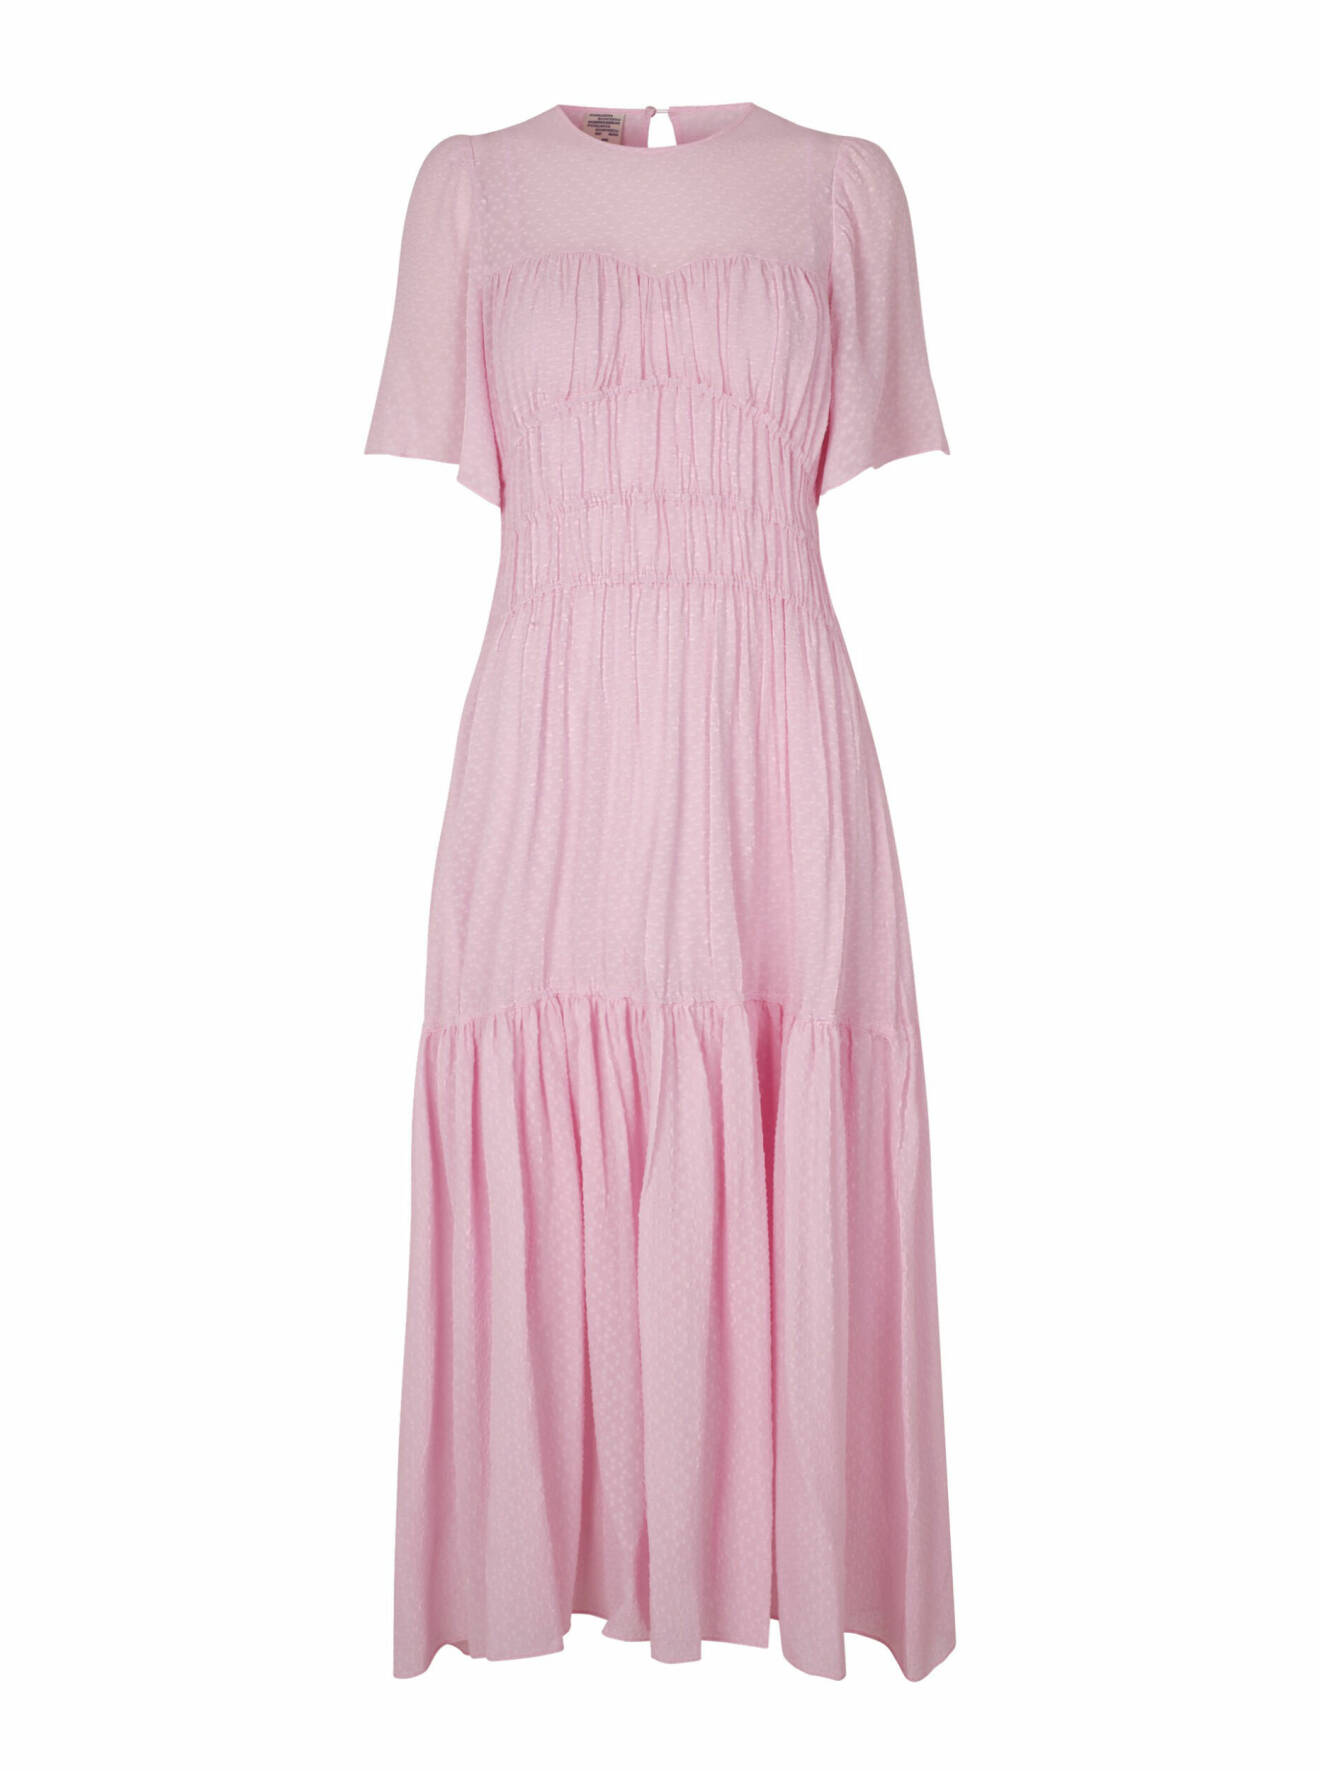 Rosa klänning i vårens trend pastell.